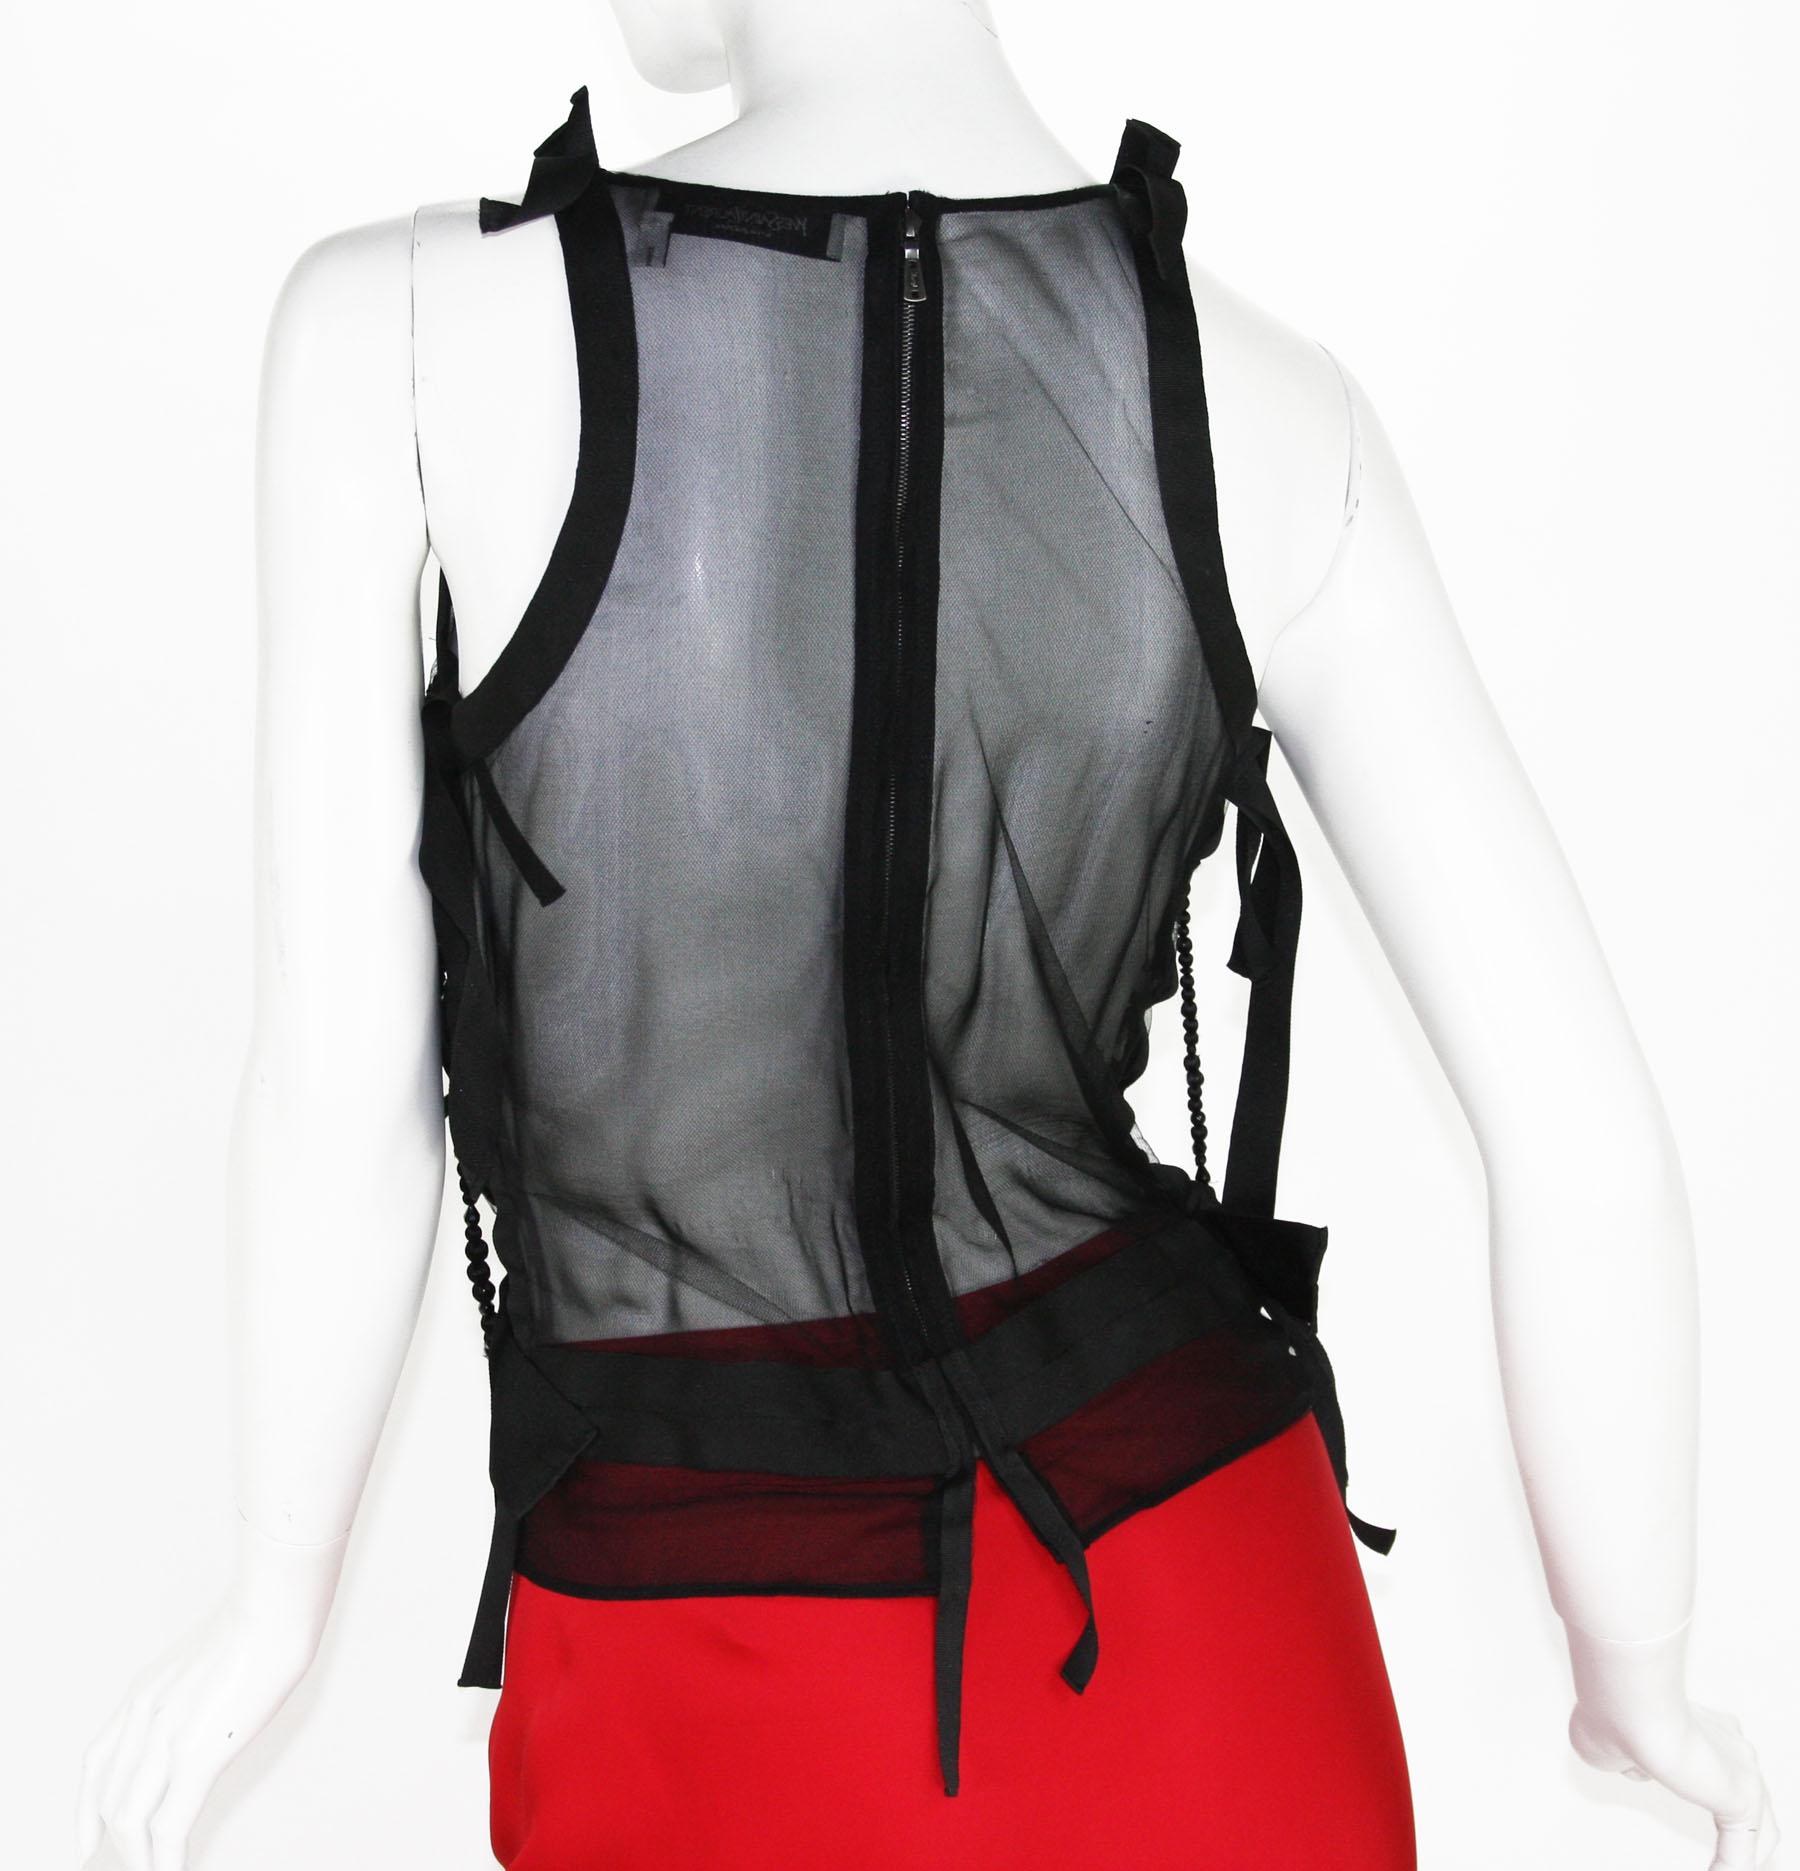 Tom Ford for Yves Saint Laurent F/W 2003 Silk Skirt Beaded Sheer Black Top Set For Sale 8